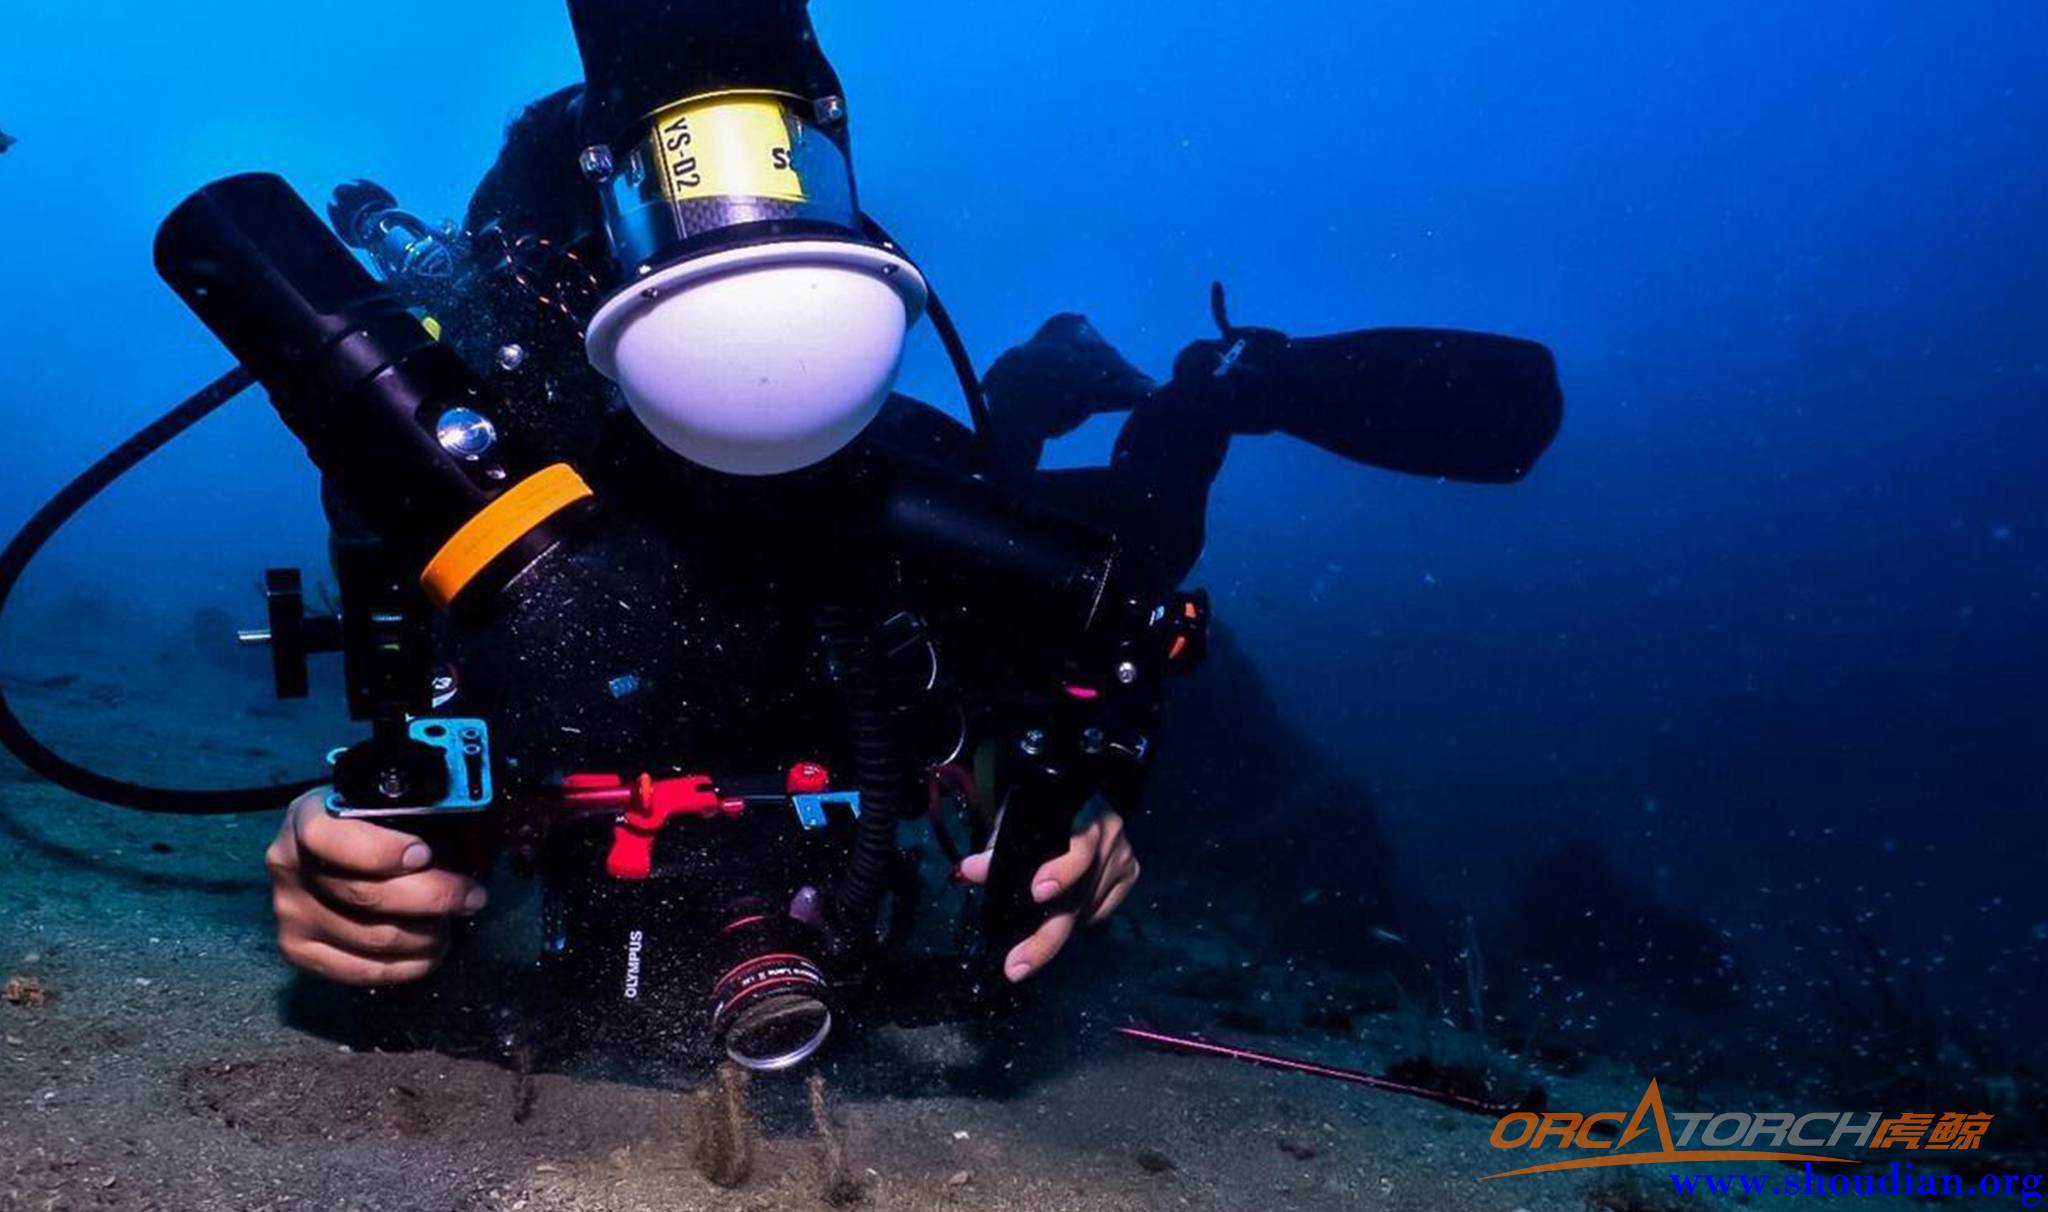 水下摄影补光潜水手电筒照明知识科普丨OrcaTorch潜水